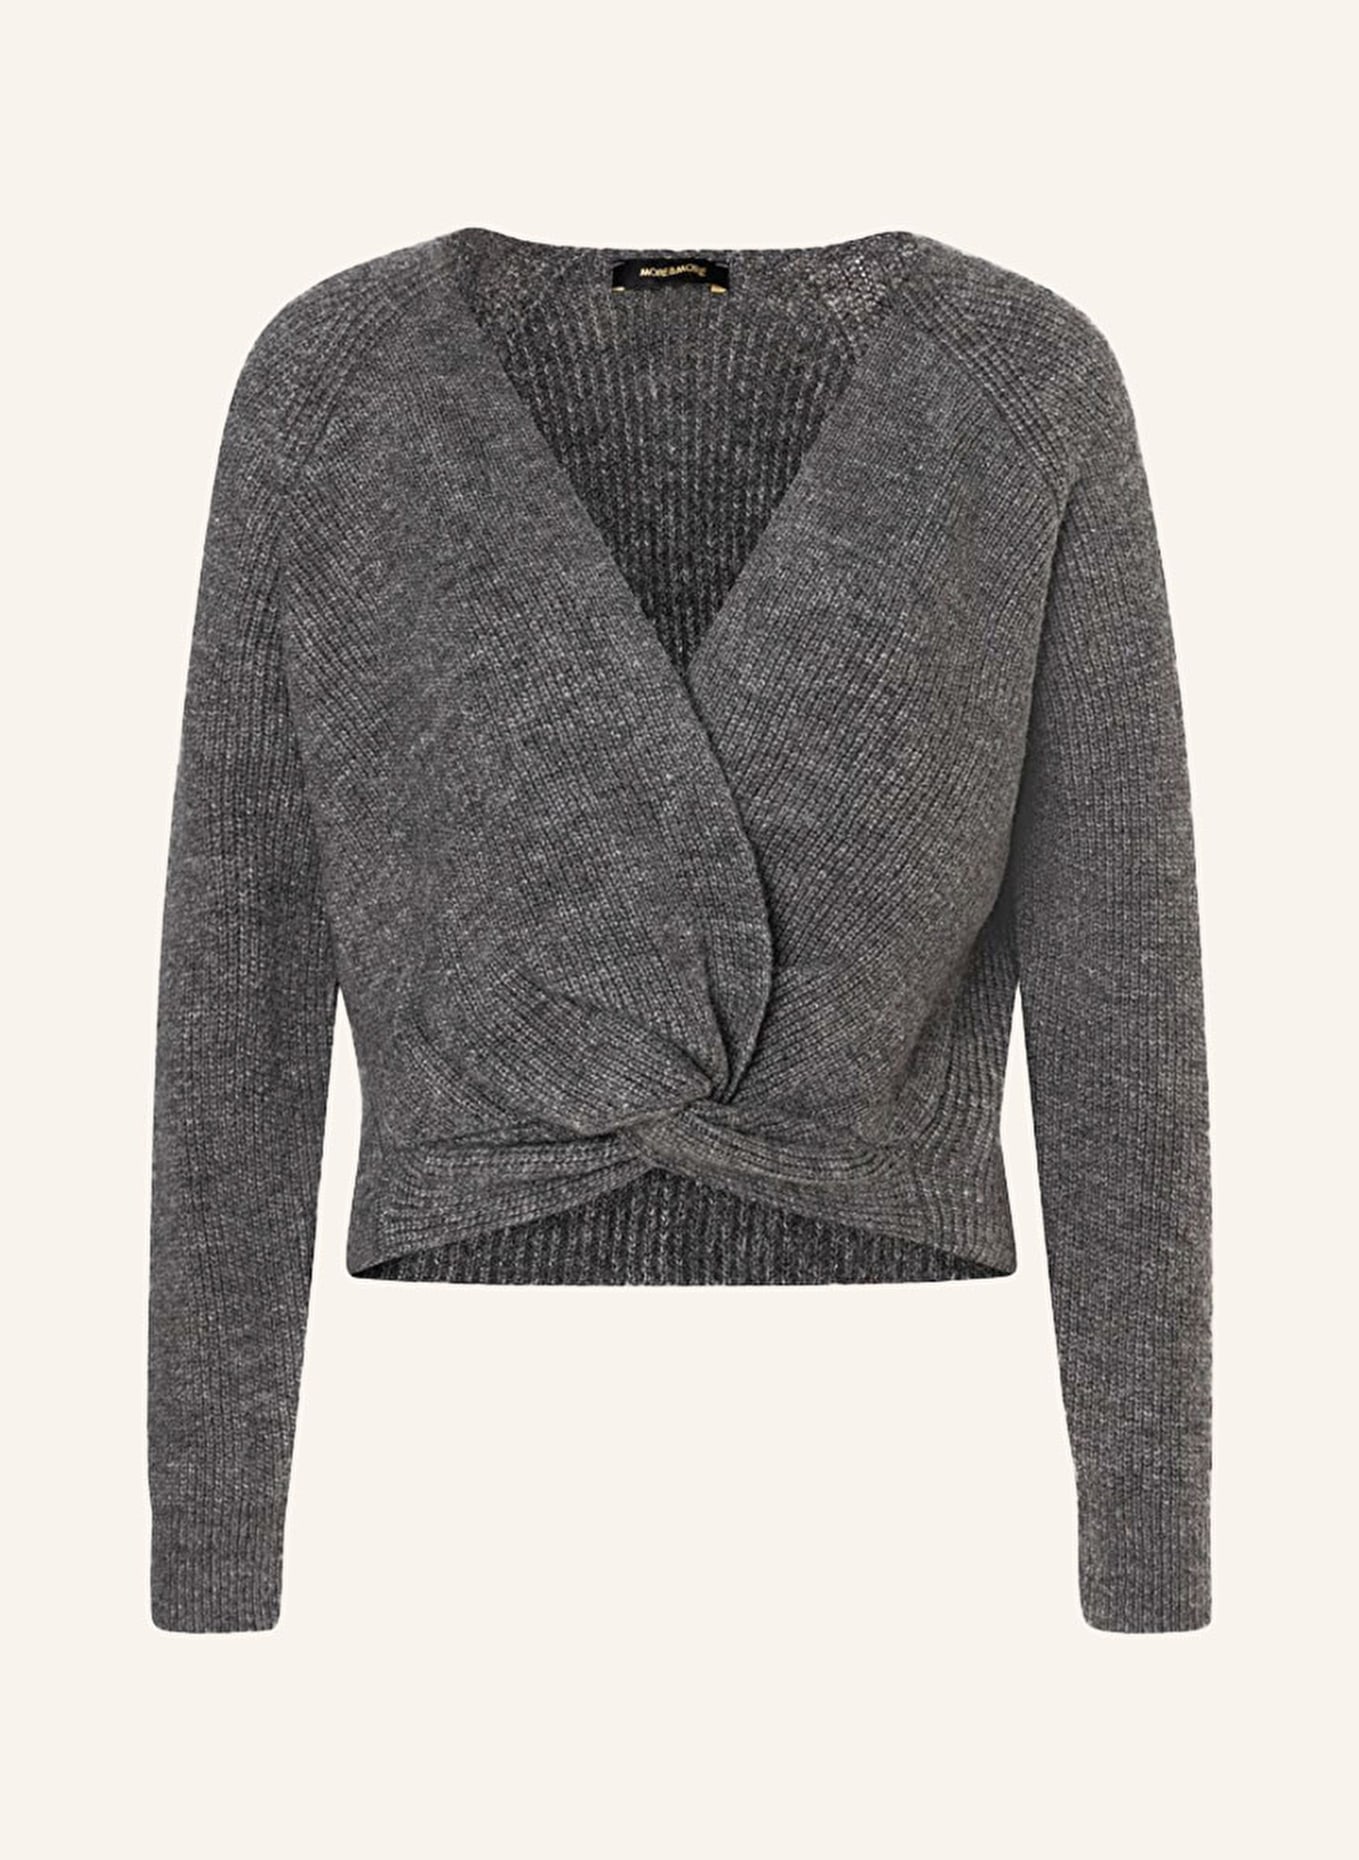 MORE & MORE Pullover, Farbe: GRAU (Bild 1)